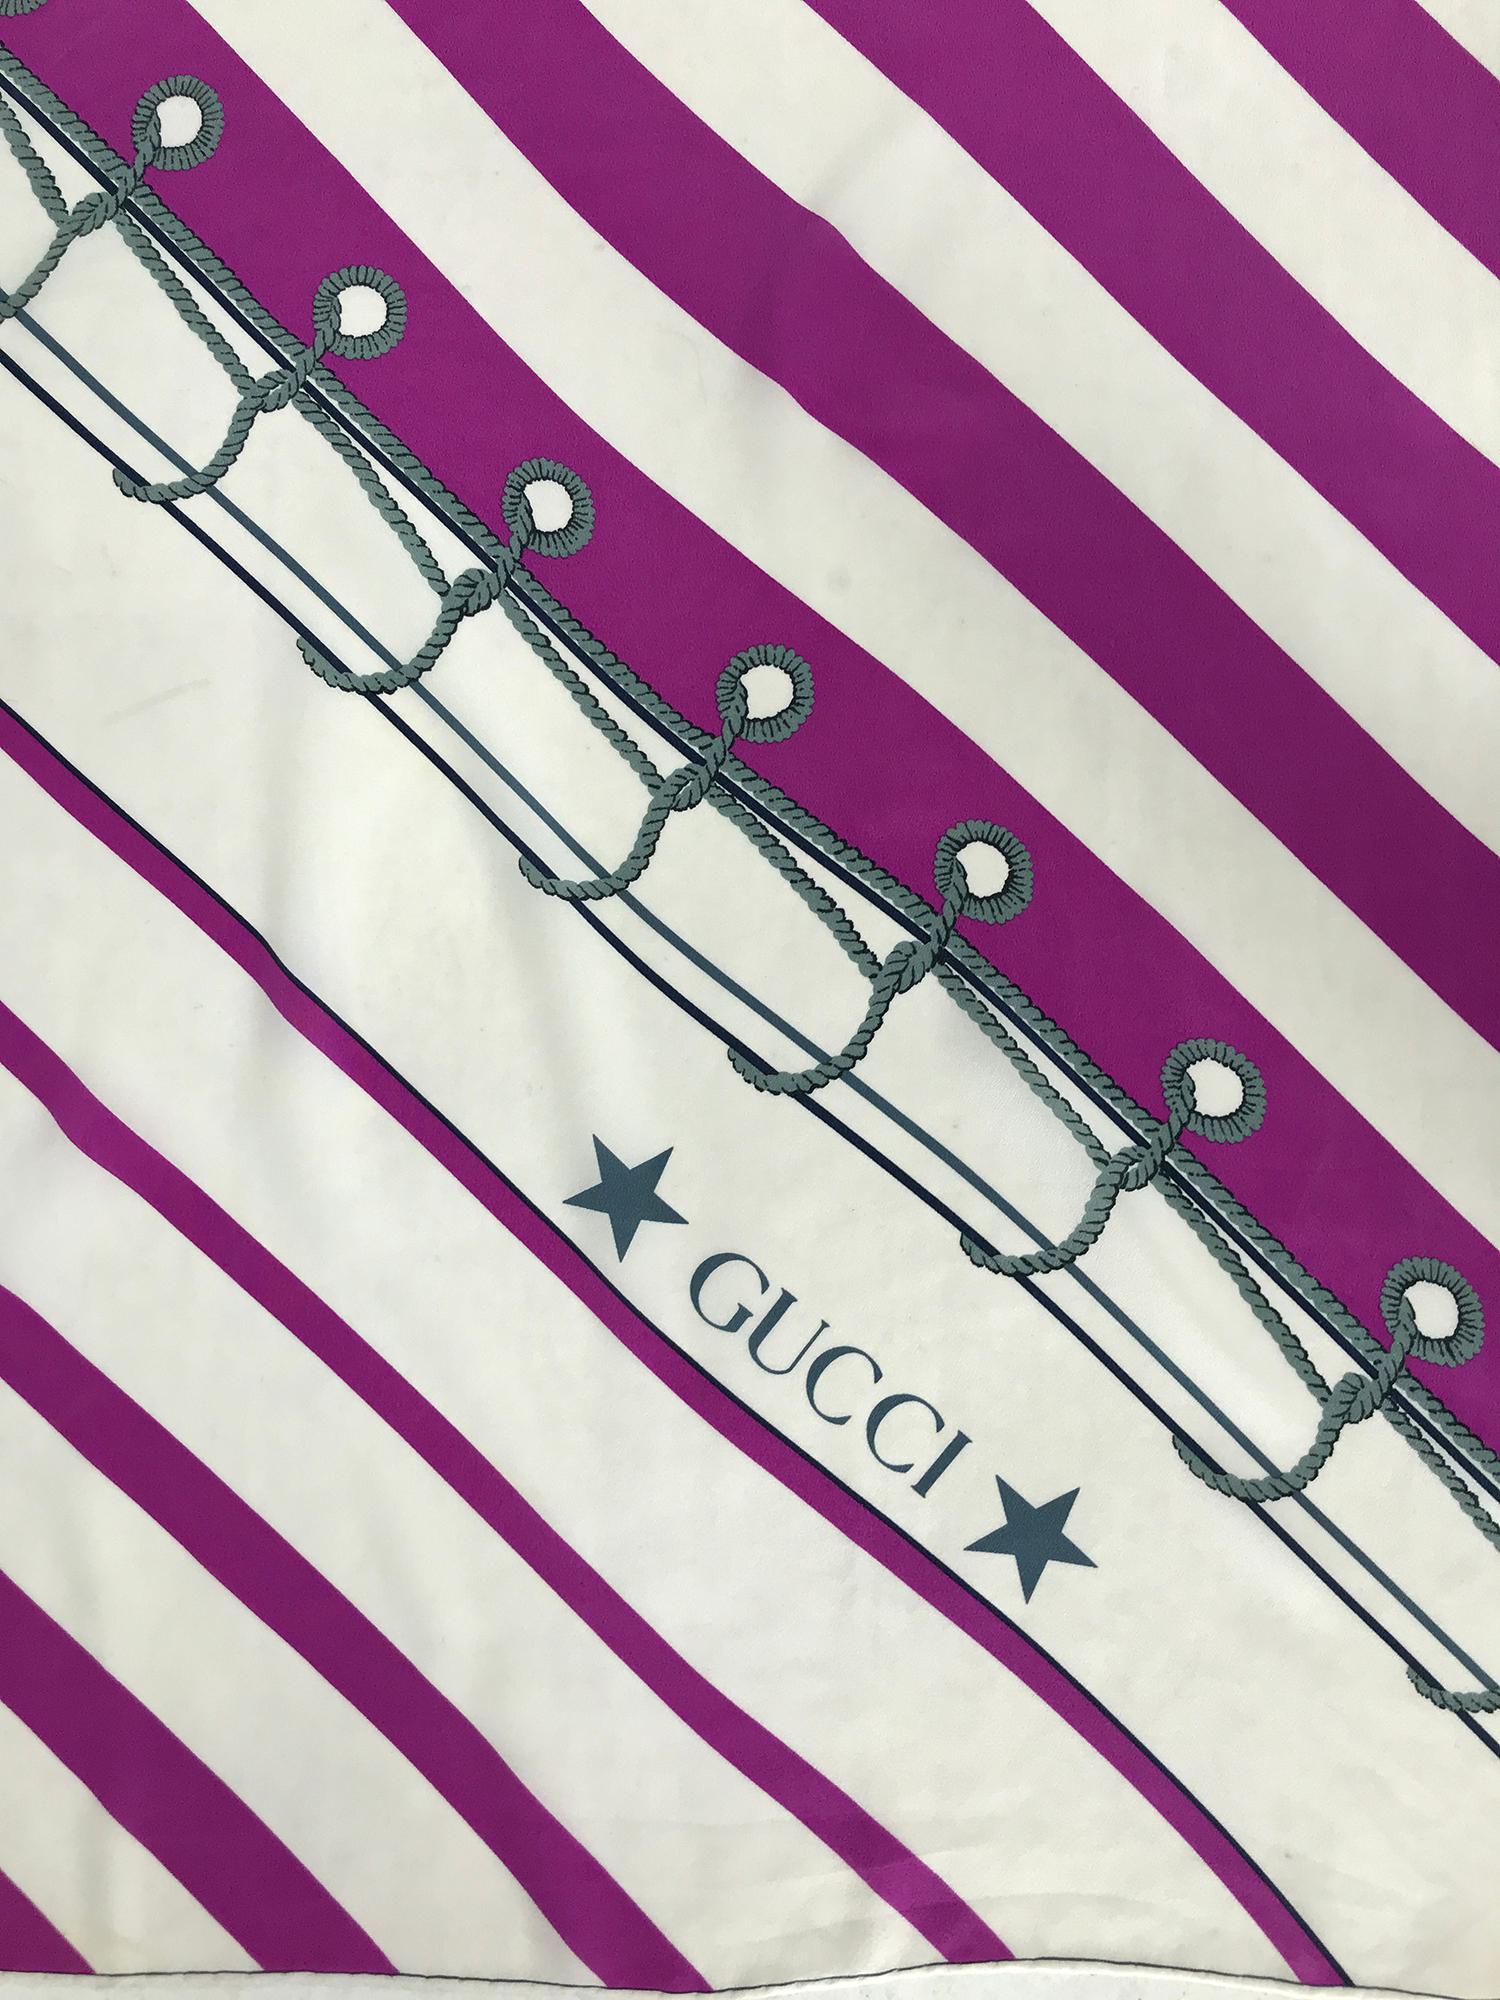 Écharpe en crêpe de soie Gucci à imprimé nautique en diagonale. Magnifique tissu dans de superbes couleurs. 34 x 34. En très bon état. 